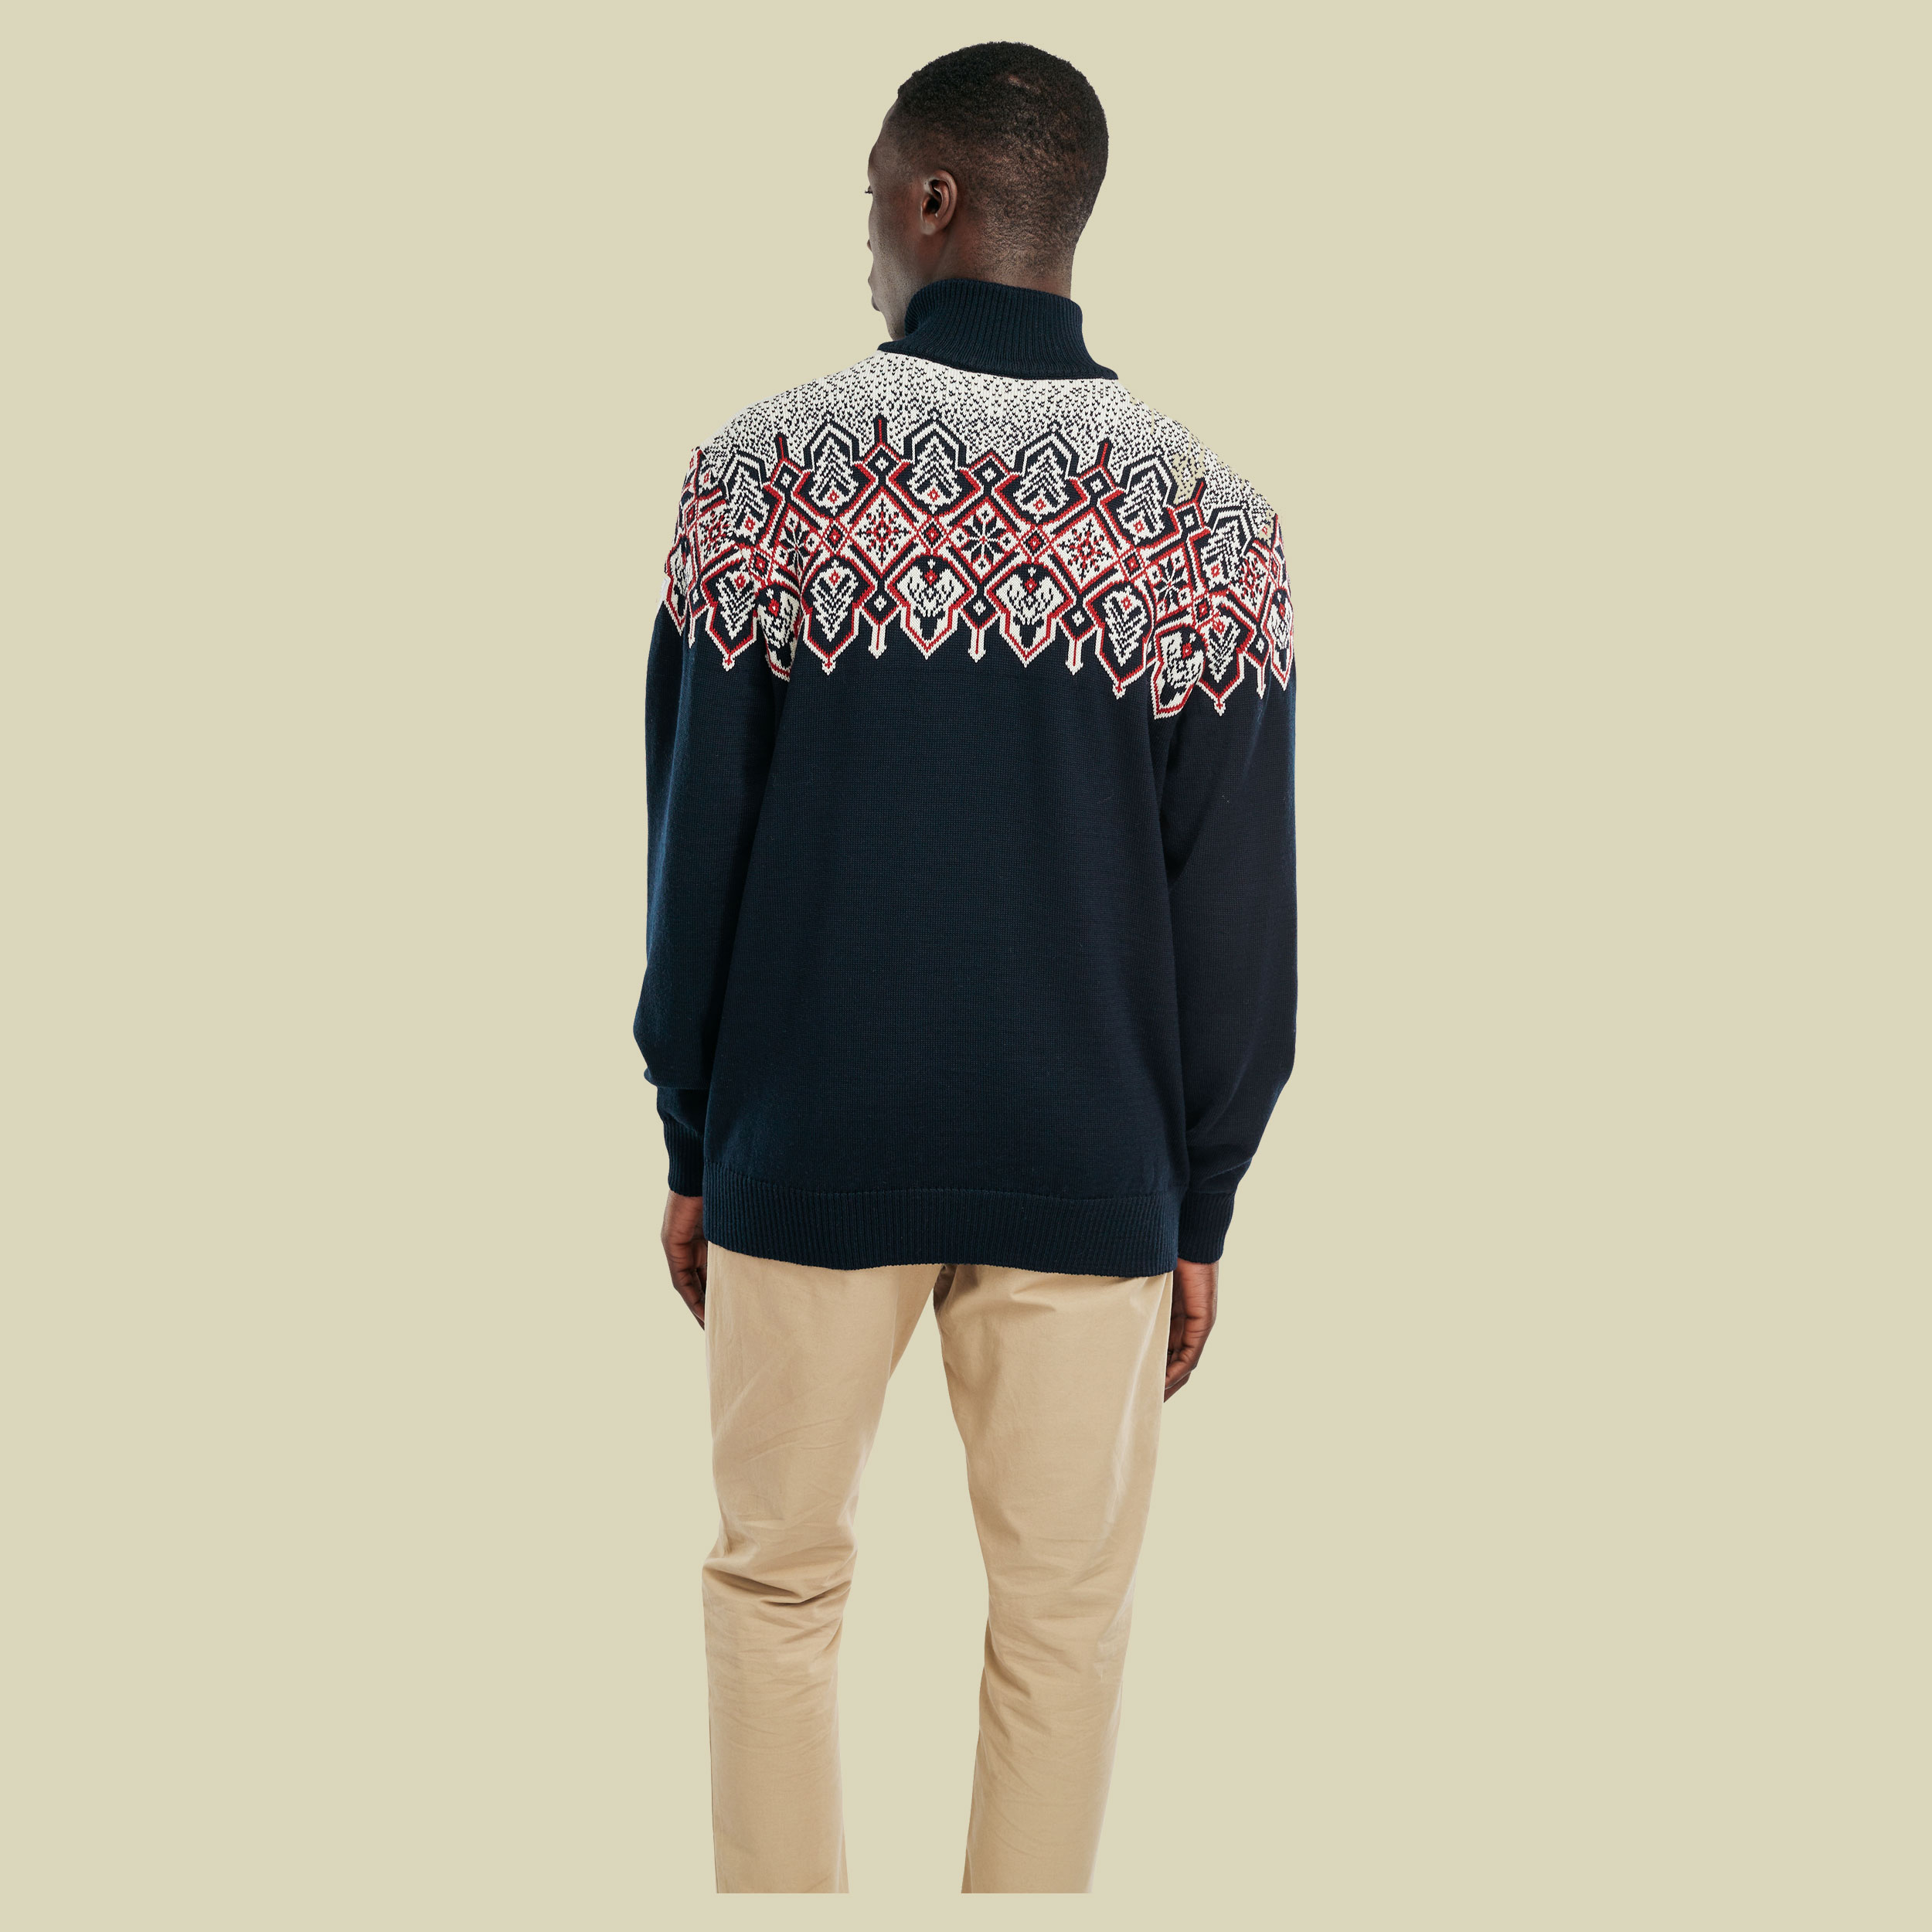 Winterland Sweater Men Größe XL Farbe navy-off white-raspberry